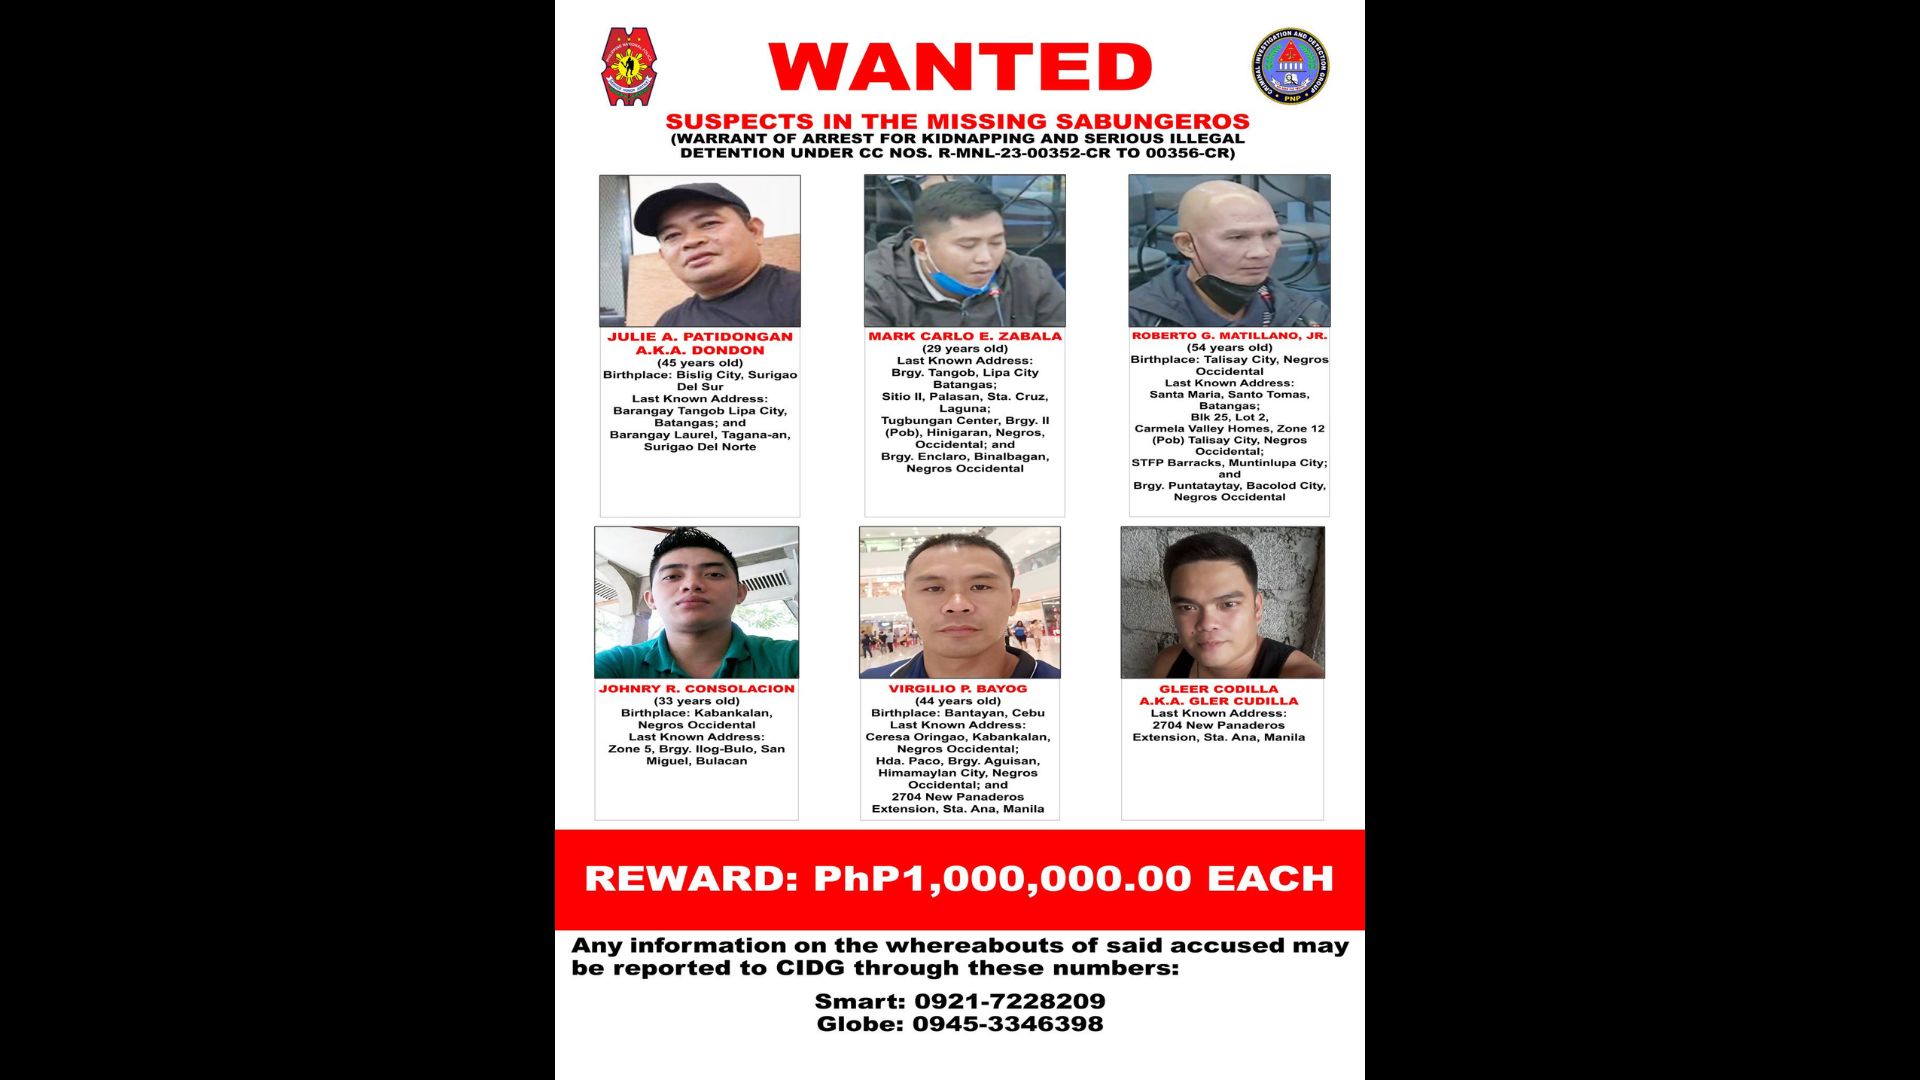 Posters ng anim na pinaniniwalaang nasa likod ng pagkawala ng mga sabungero sa Maynila, inilabas ng CIDG